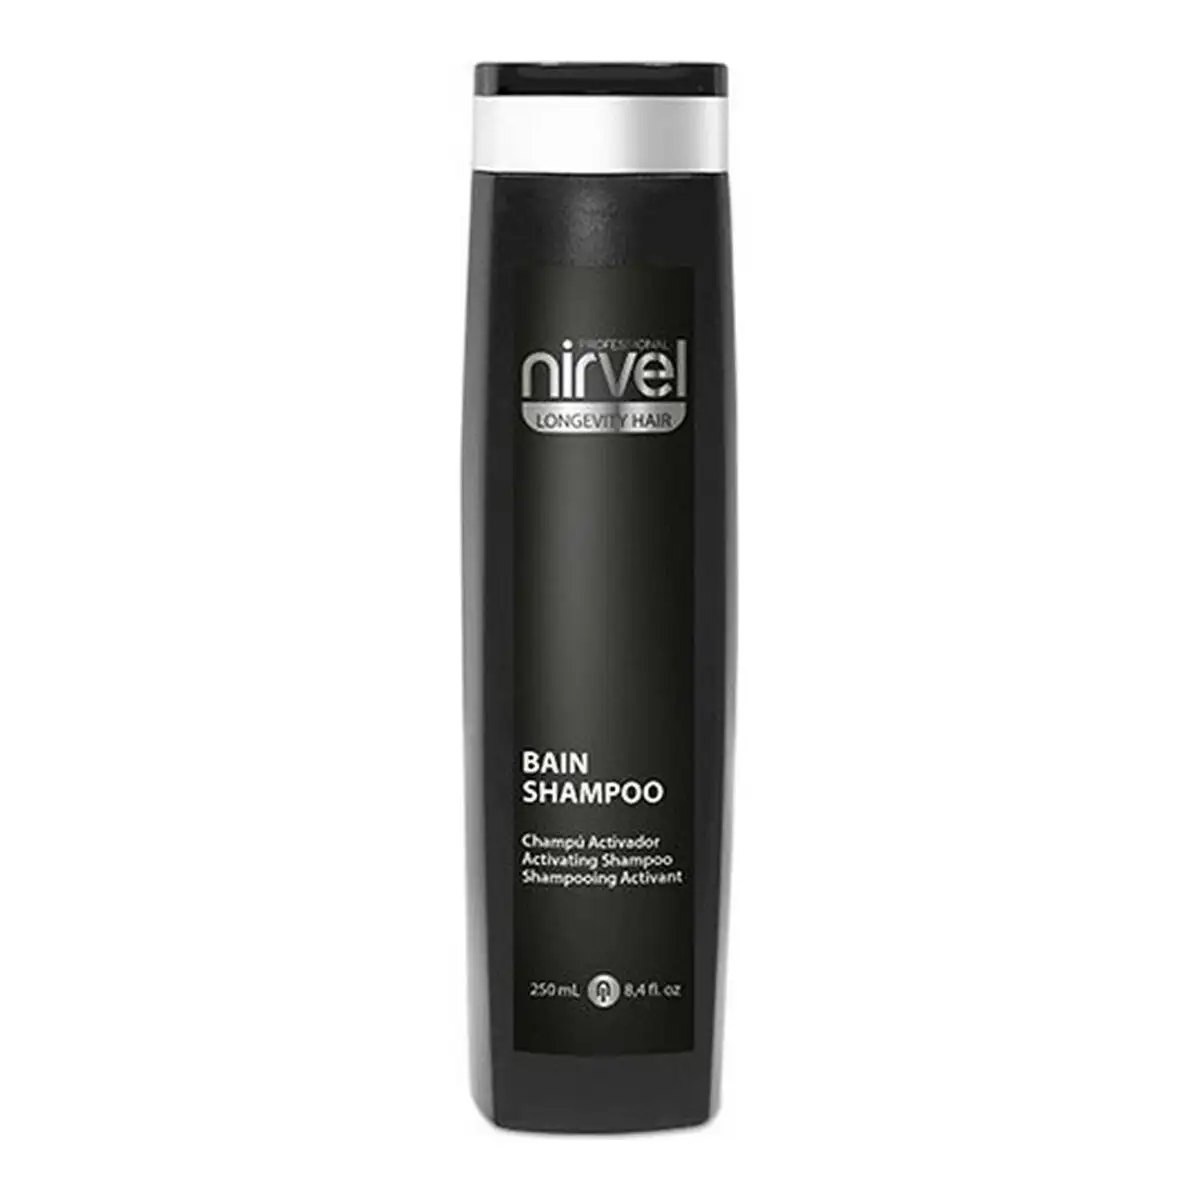 Shampooing longevity hair nirvel nl7416 250 ml _4332. DIAYTAR SENEGAL - Votre Plateforme Shopping de Confiance. Naviguez à travers nos rayons et choisissez des produits fiables qui répondent à vos besoins quotidiens.